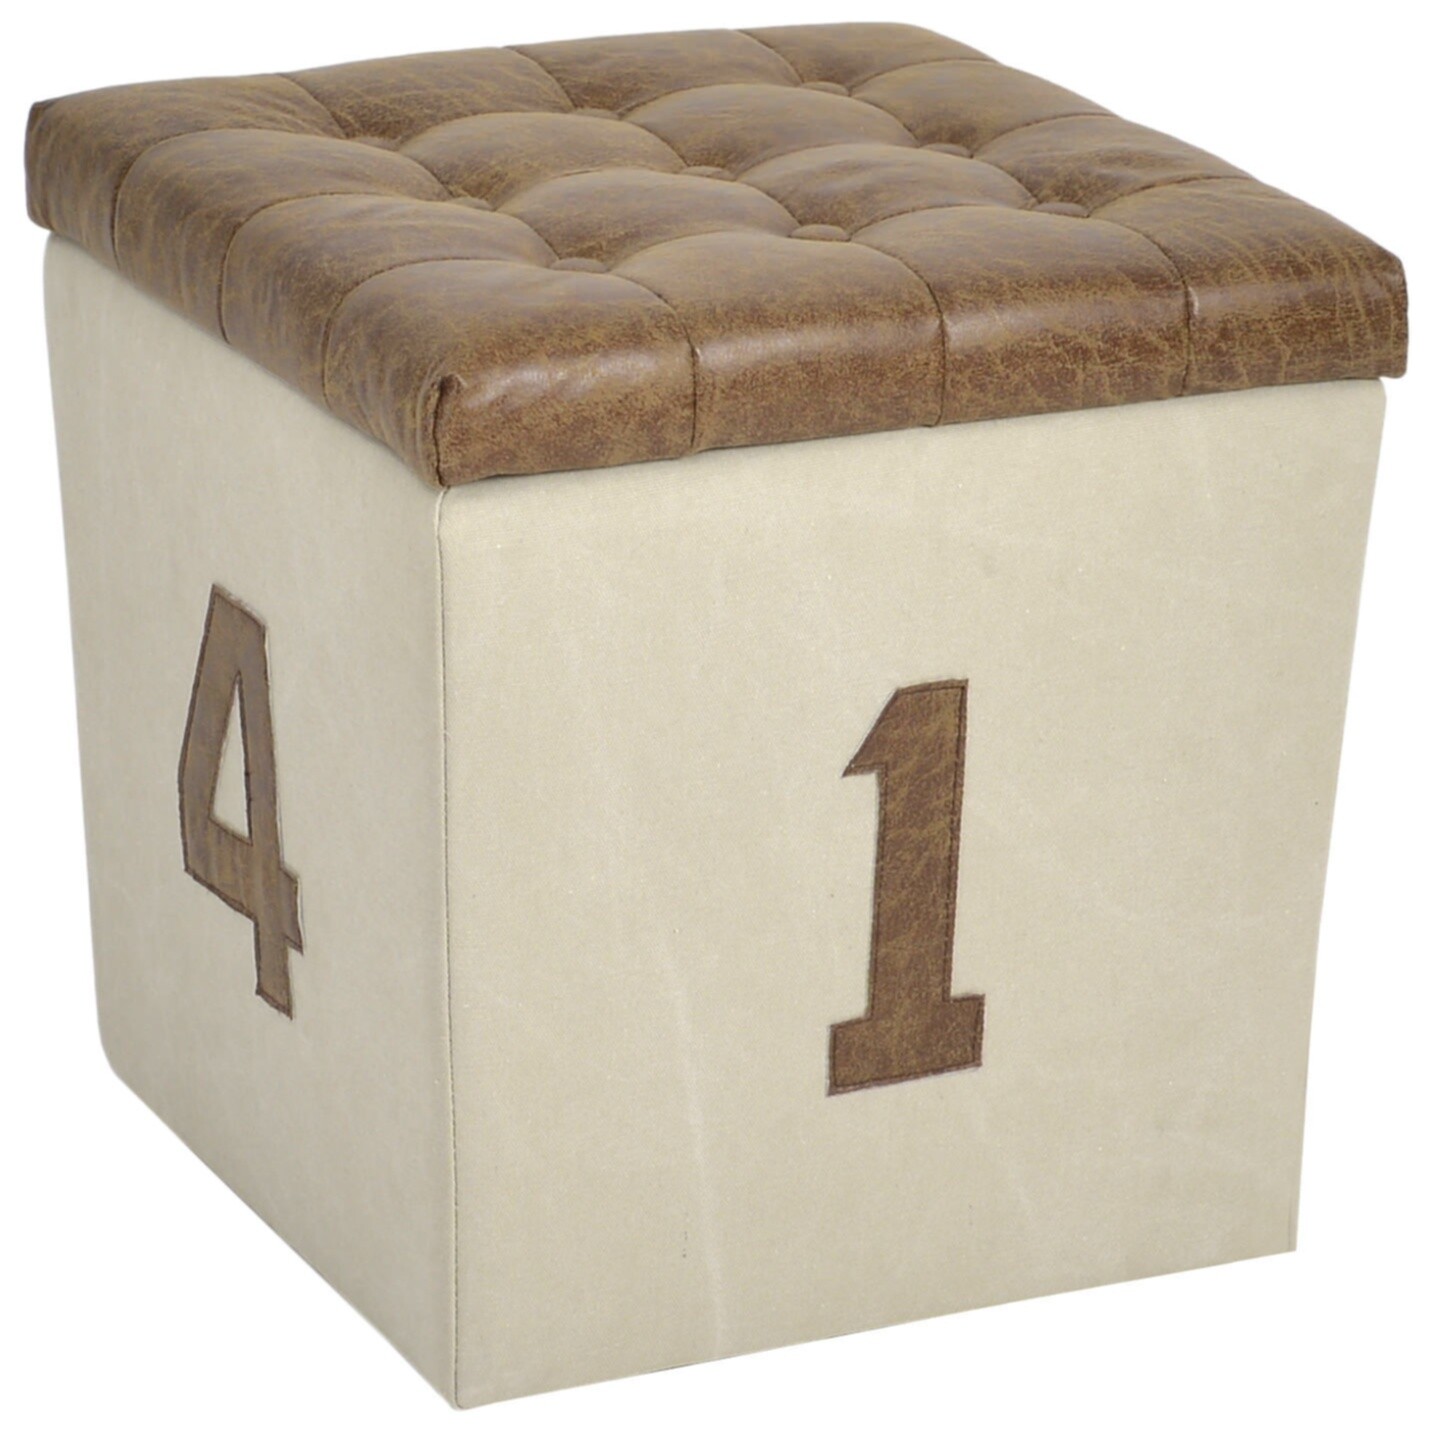 Пуф квадратный мягкий с ящиком для хранения бежевый, коричневый